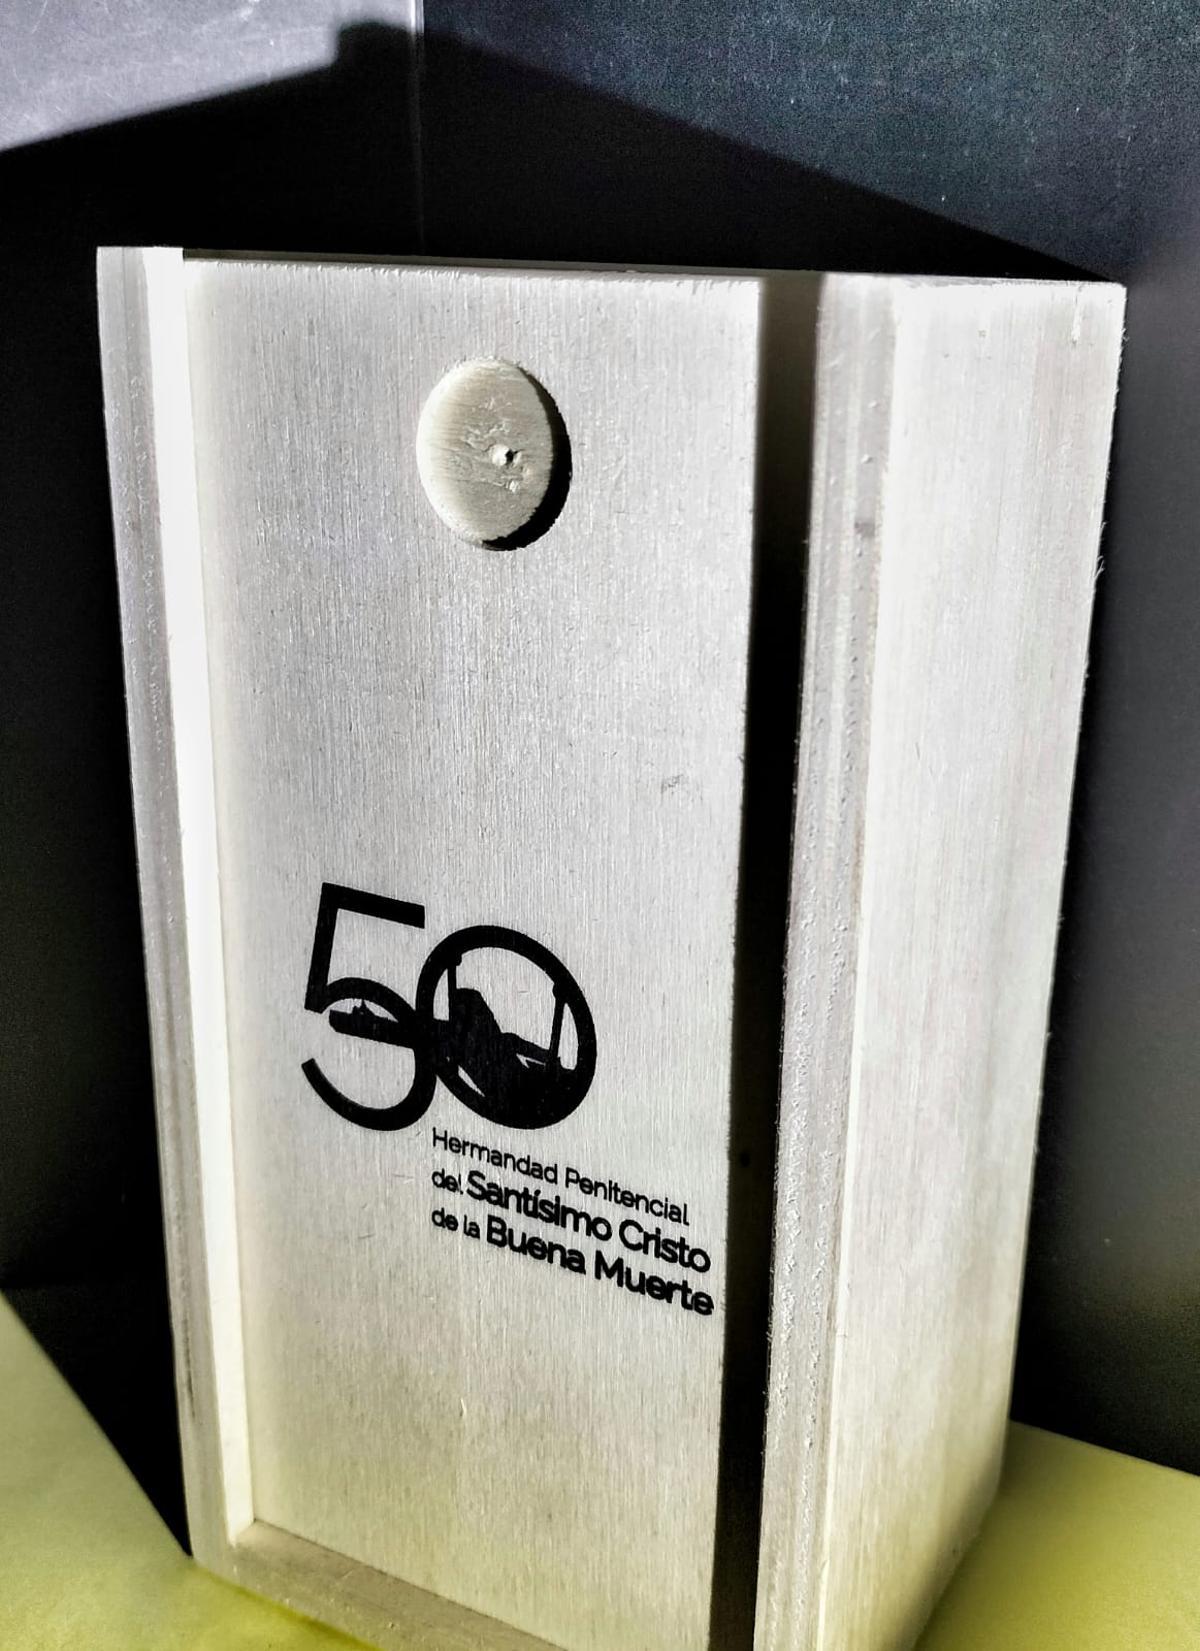 Caja de madera en la que se entregará el obsequio del 50 aniversario.